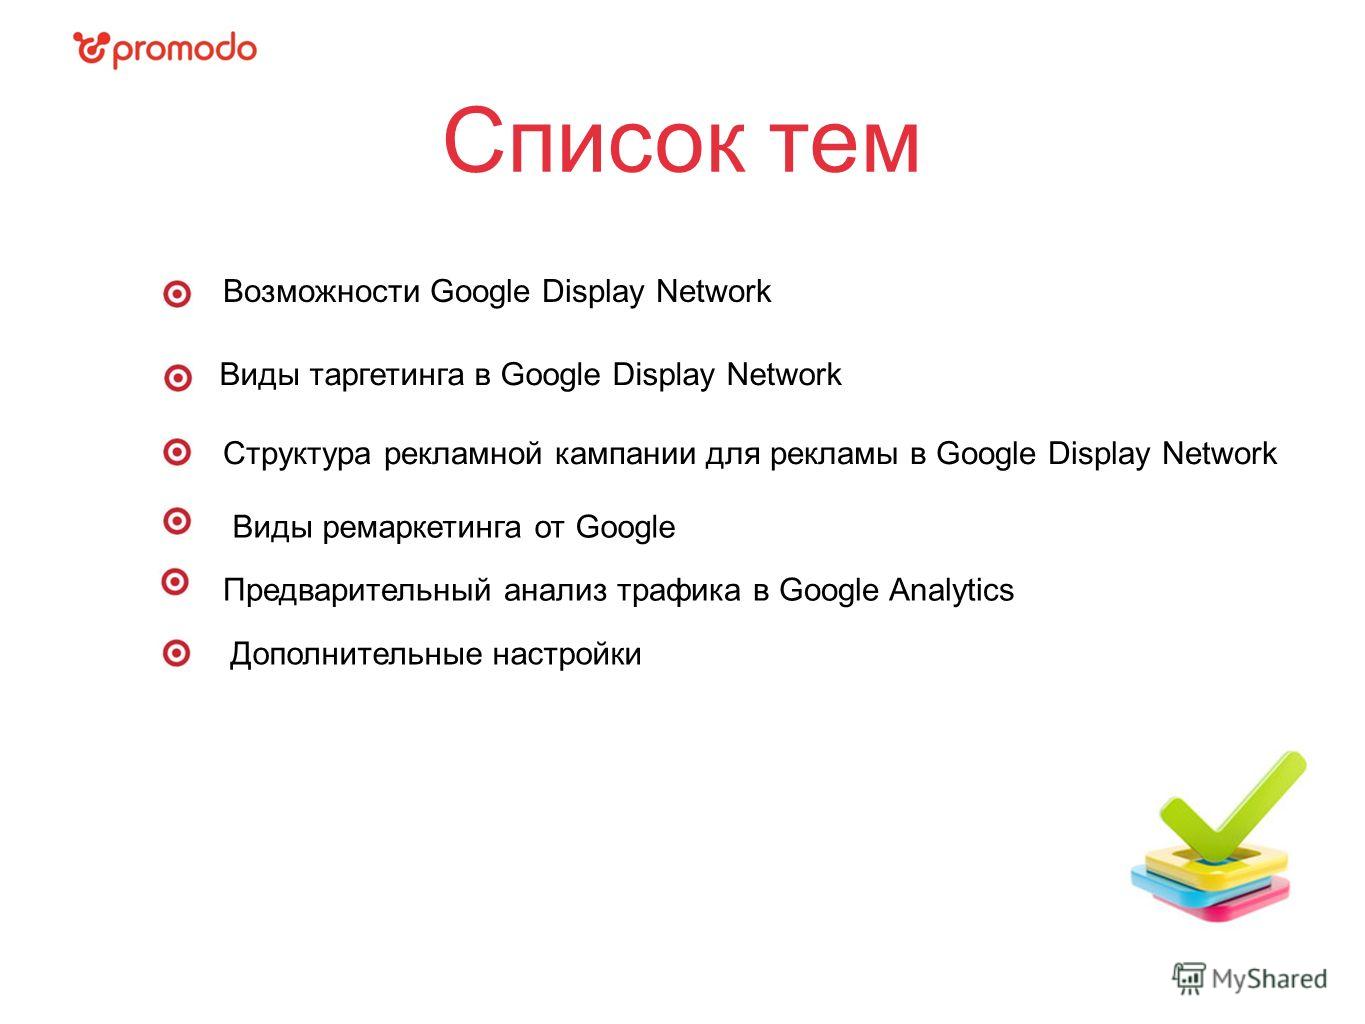 Список тем Виды таргетинга в Google Display Network Структура рекламной кампании для рекламы в Google Display Network Предварительный анализ трафика в Google Analytics Виды ремаркетинга от Google Возможности Google Display Network Дополнительные наст